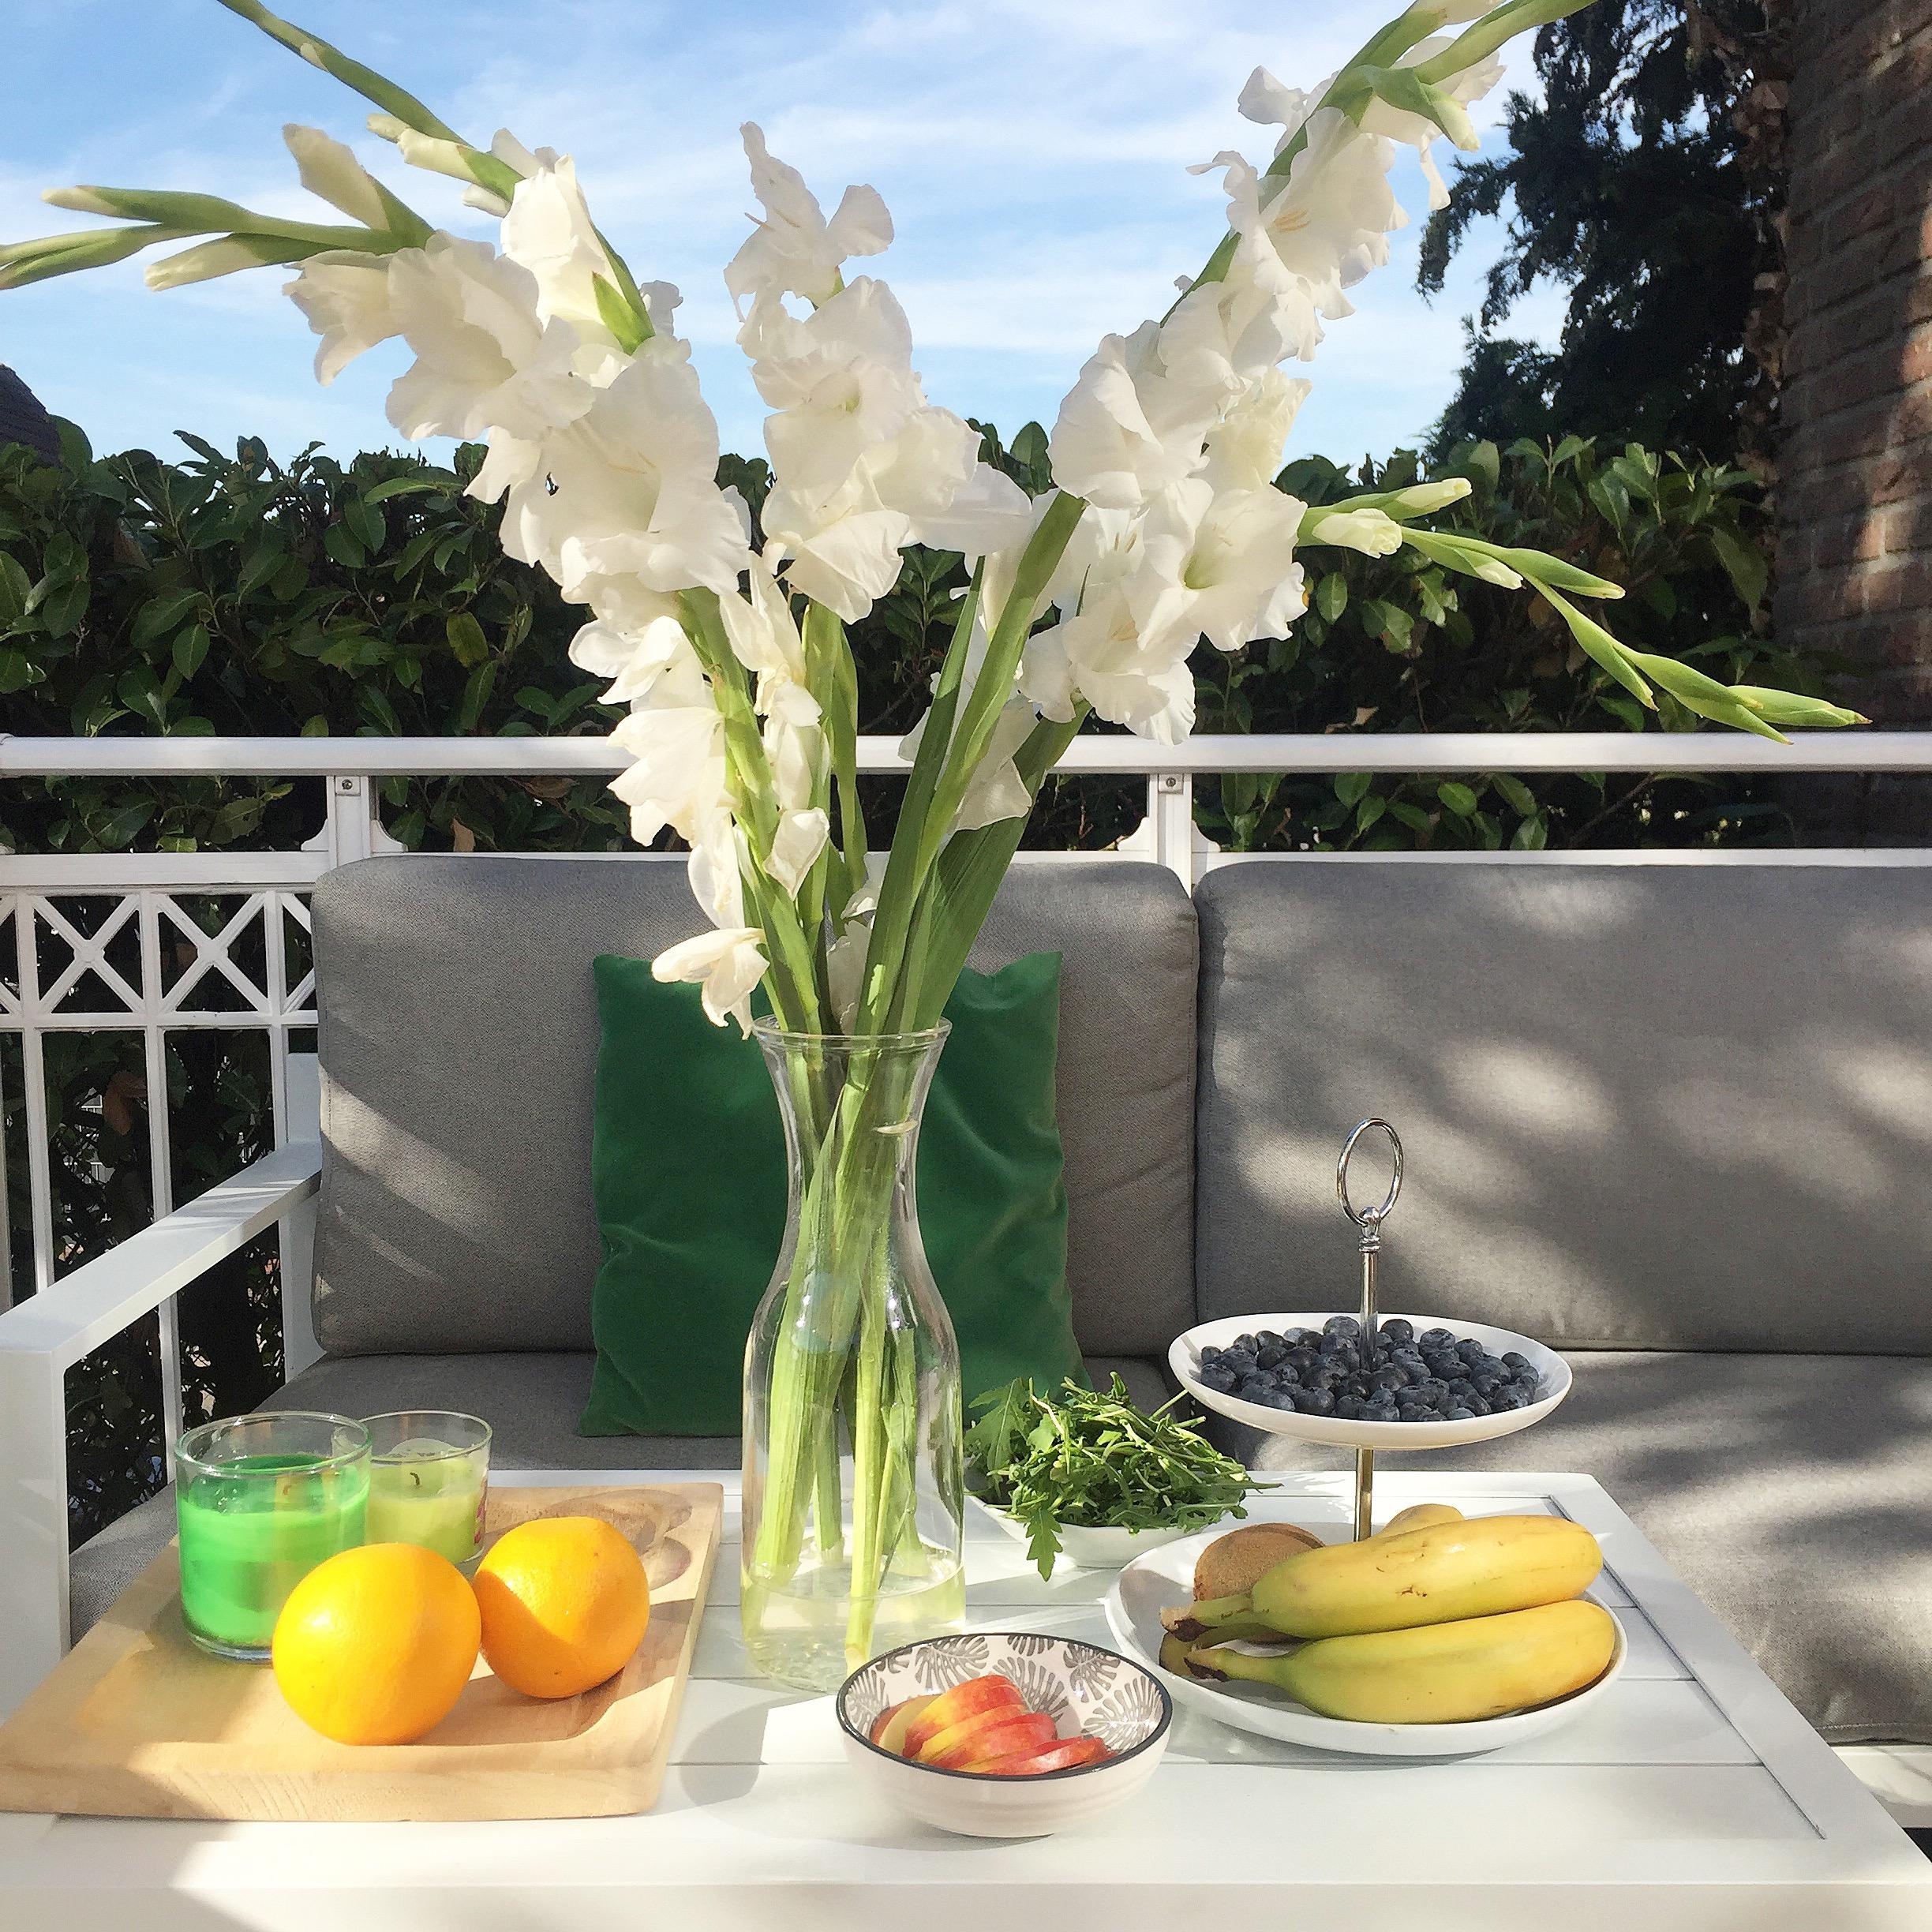 Bei der Hitze schmeckt Obst besonders lecker. #summer #Sommer #balkon #obst #couchstyle